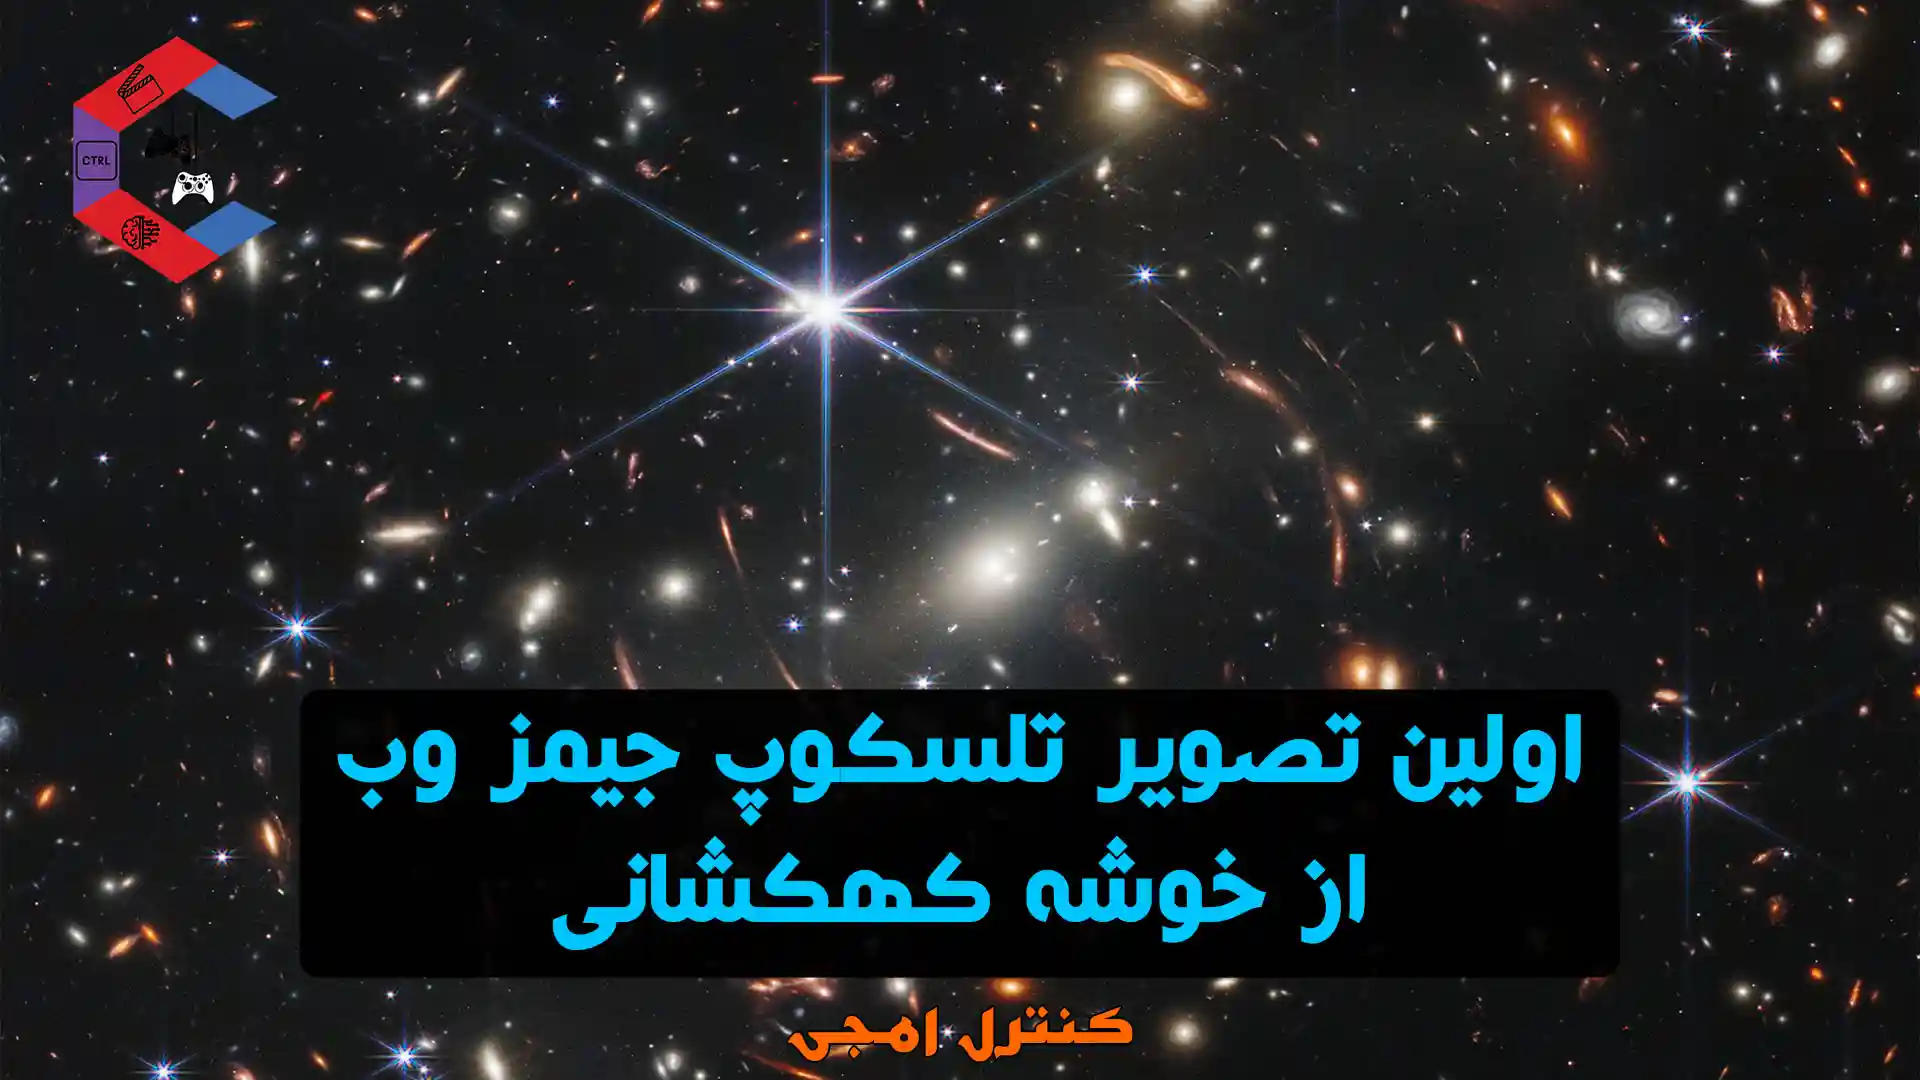 اولین تصویر تلسکوپ جیمز وب از خوشه کهکشانی منتشر شد | واضح‌ ترین عکس انسان از کیهان